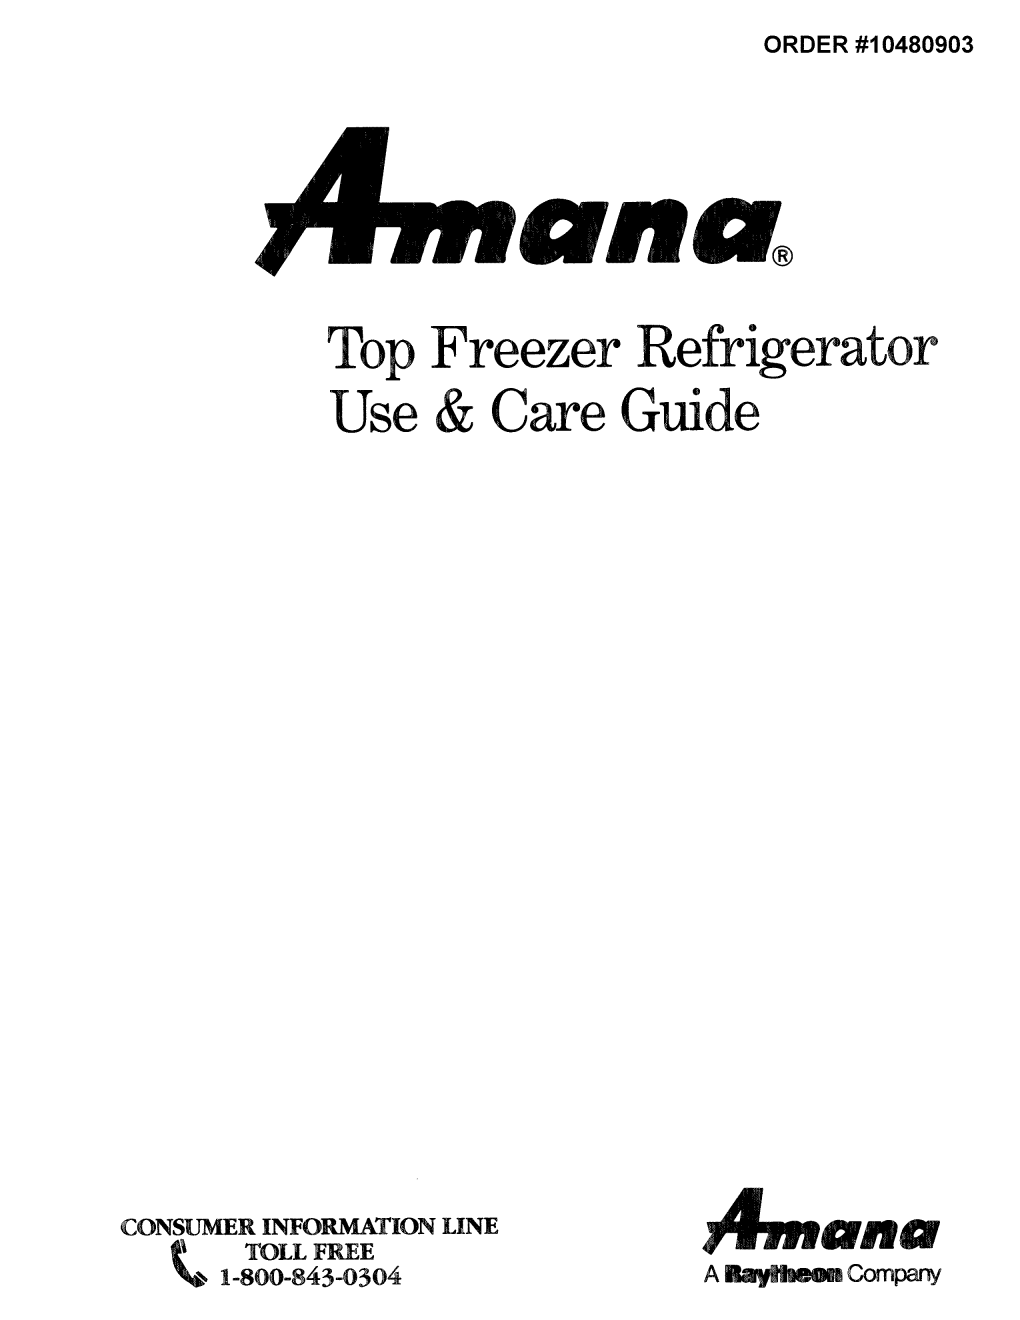 Top Freezer Refrigerator Use & Care Guide